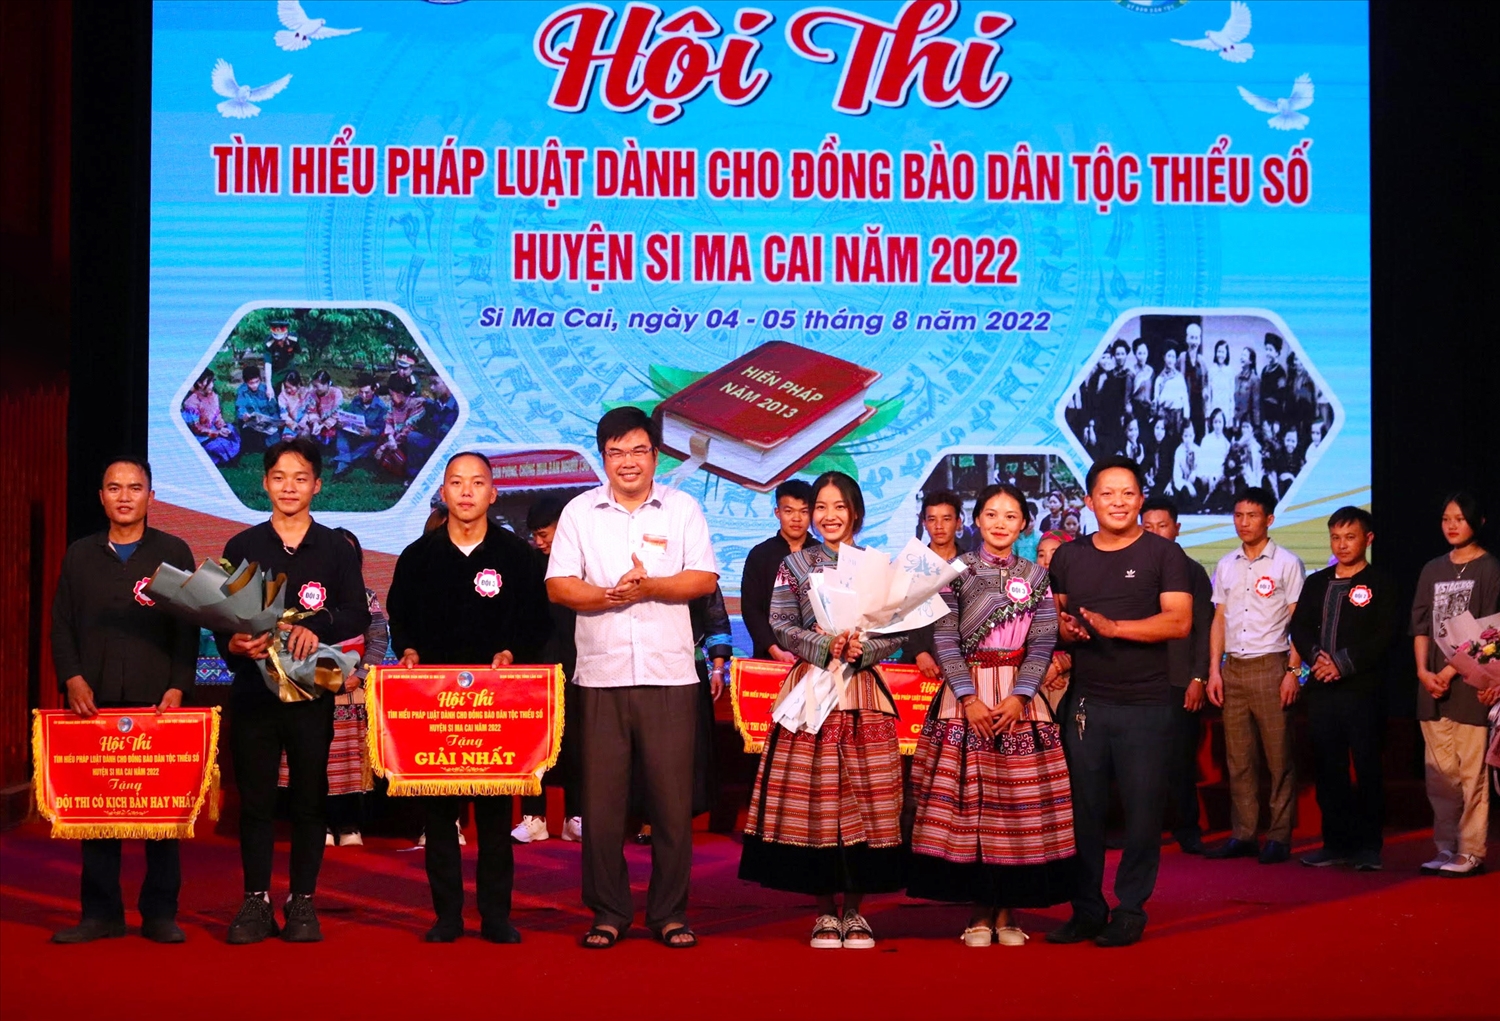 Ông Trần Phùng, Phó trưởng Ban Dân tộc tỉnh Lào Cai trao giải cho đội giành giải Nhất Hội thi